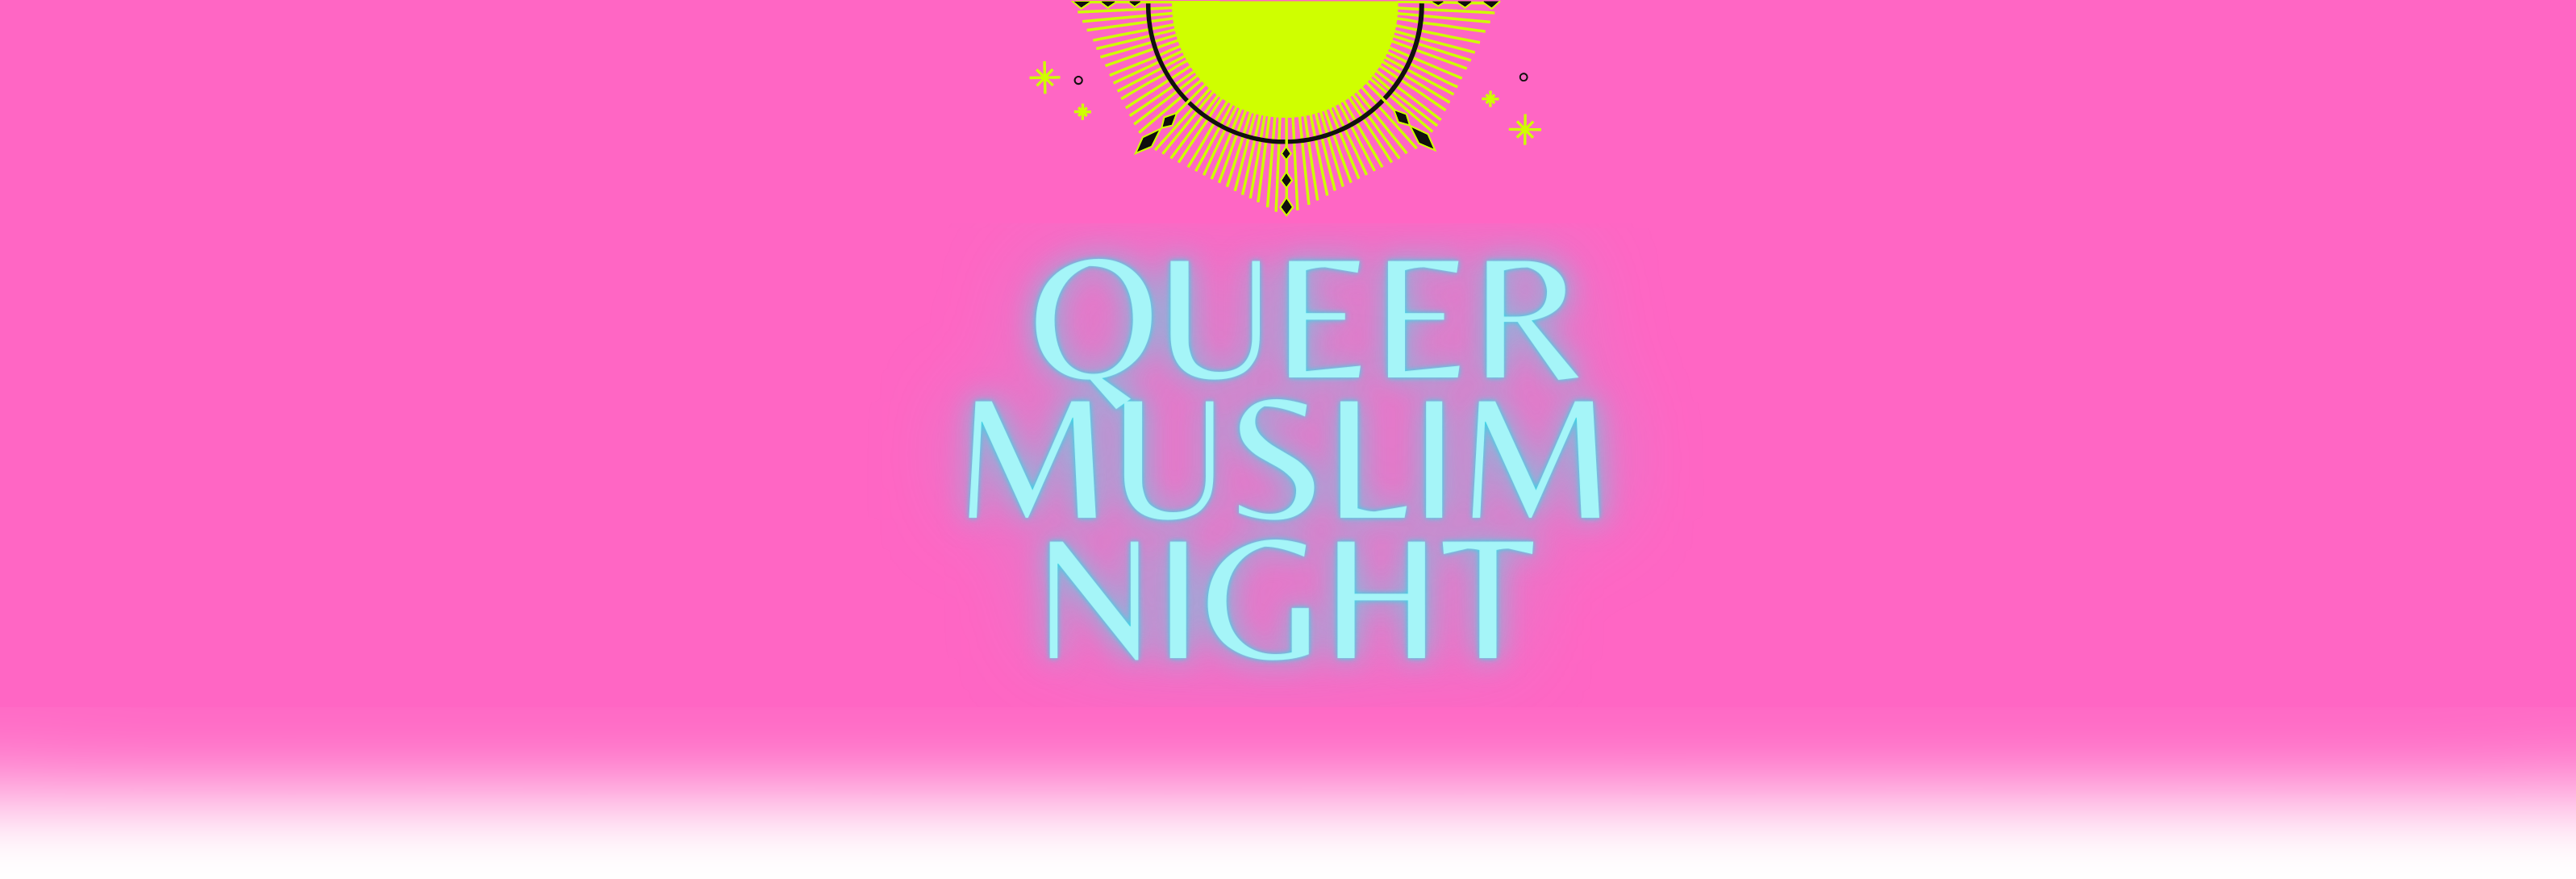 Queer Muslim Night